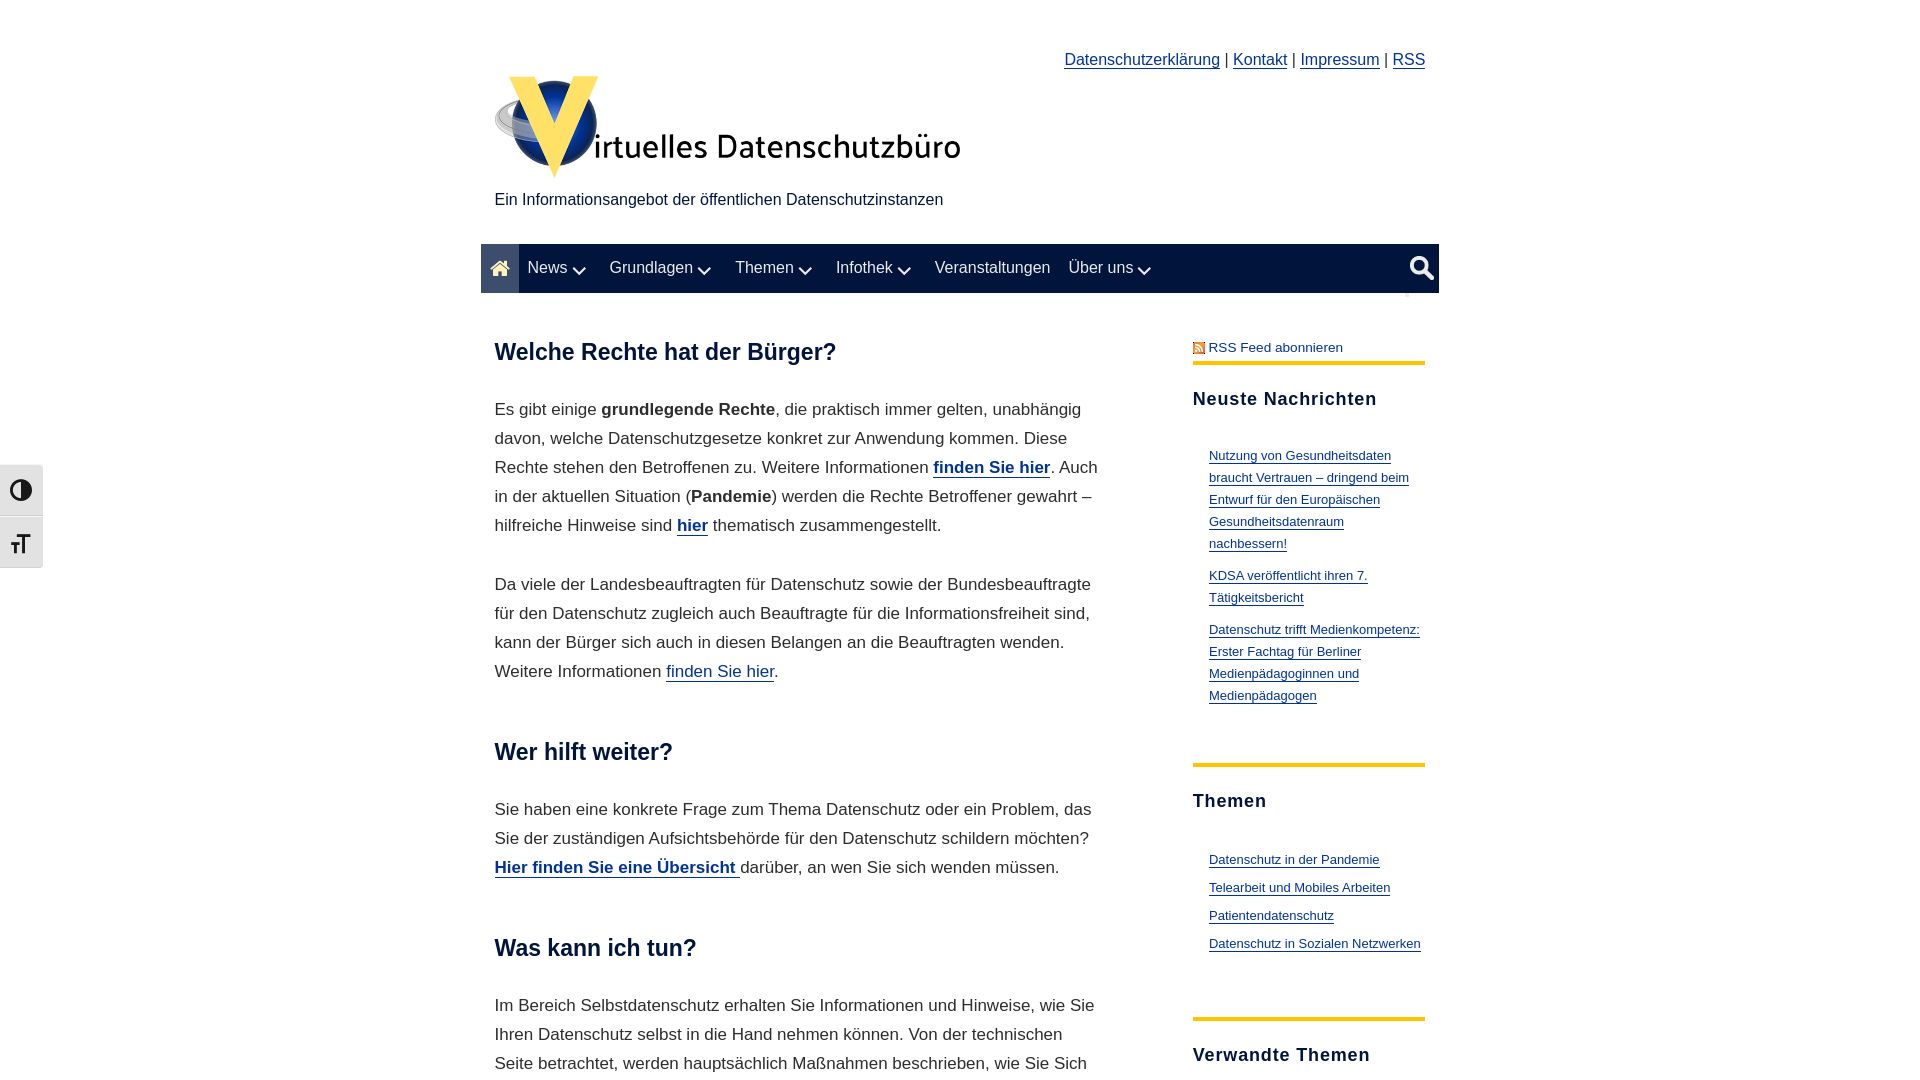 Website status datenschutz.de is   ONLINE